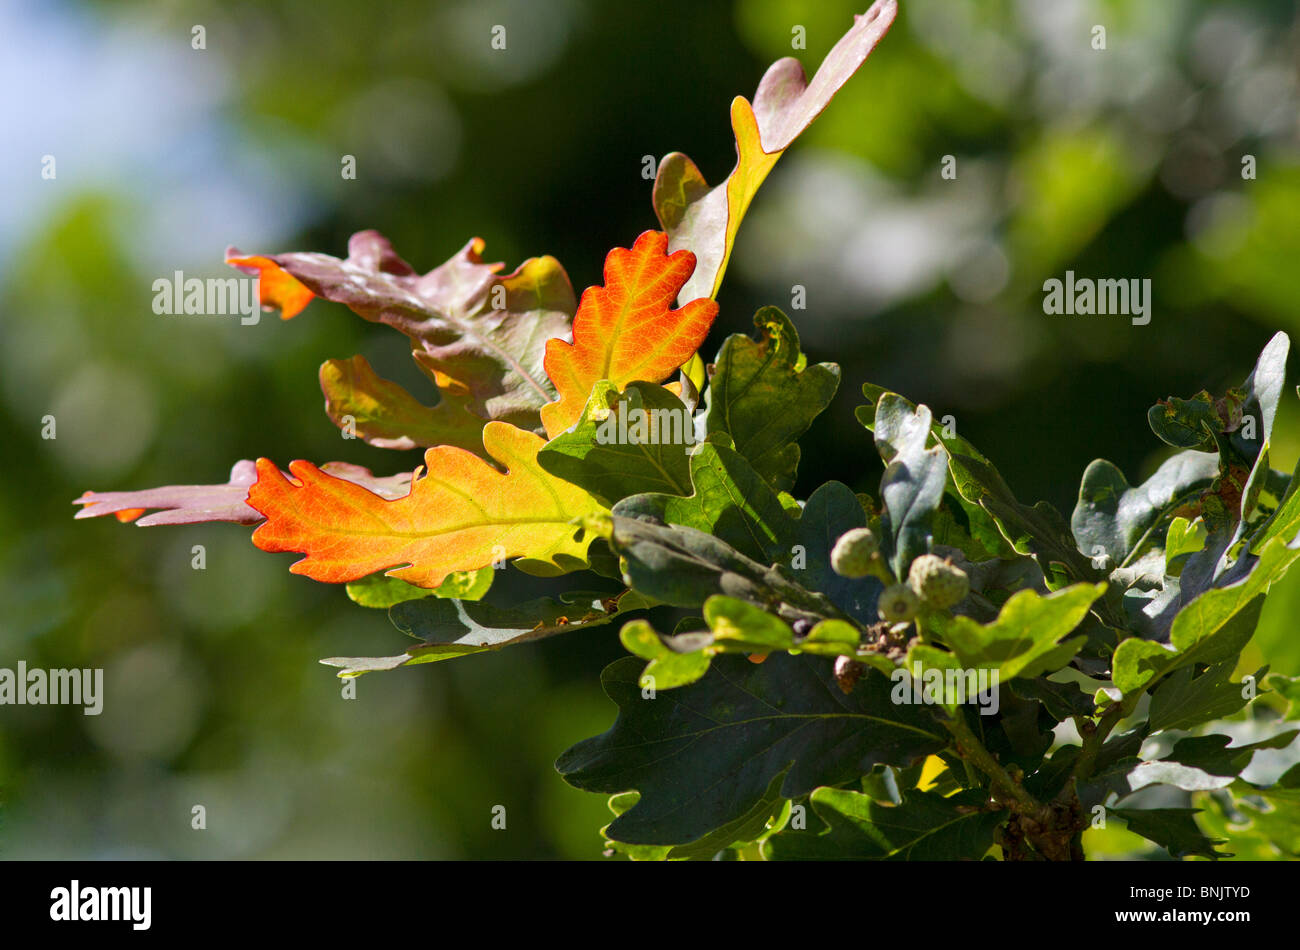 El sol brillaba en inglés hojas de roble (Quercus robur) en verano. Sussex, UK Foto de stock